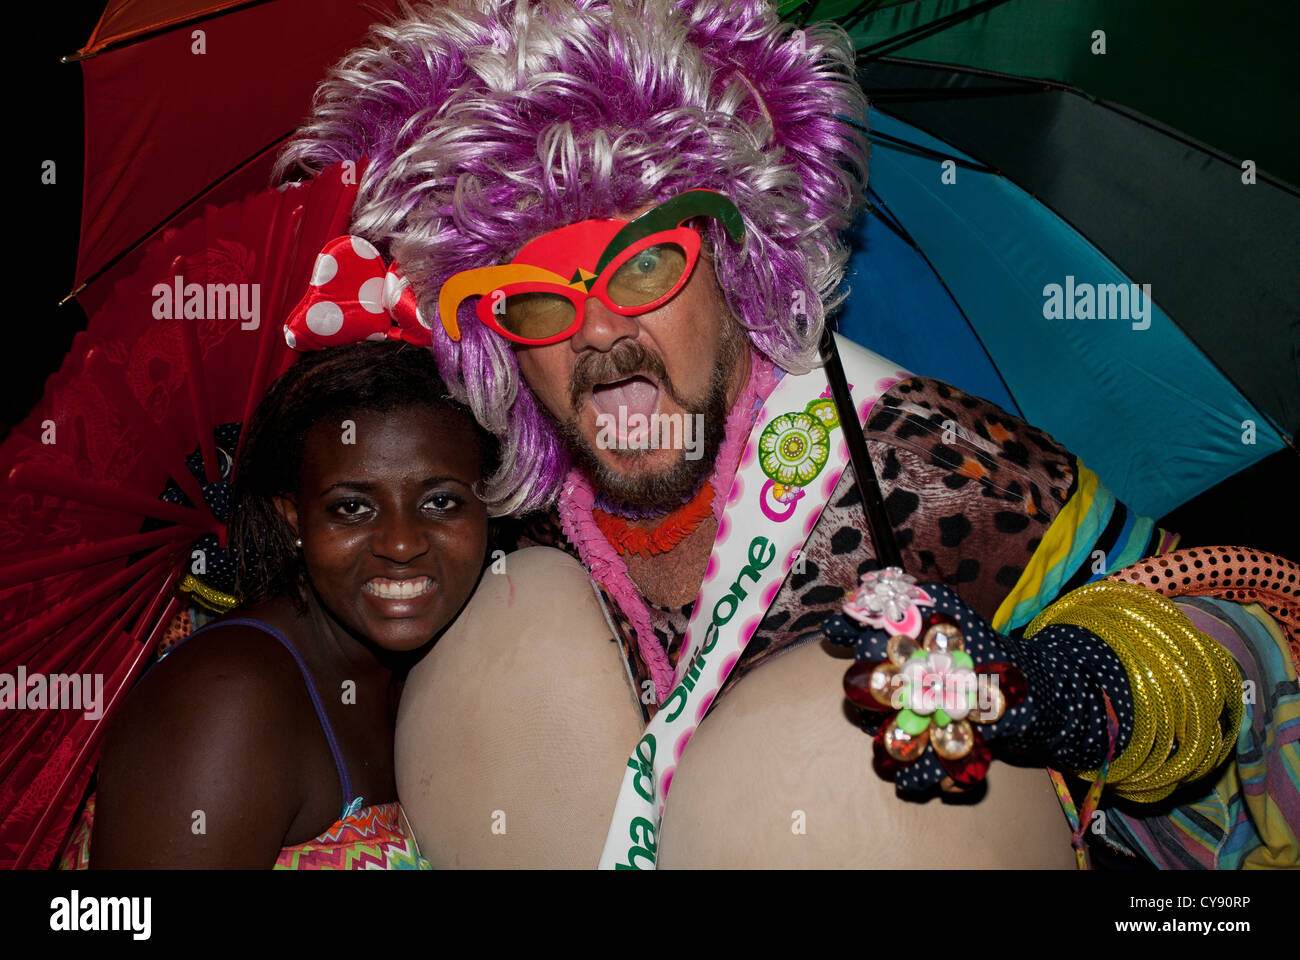 Banda de Ipanema Street Carnival Rio de Janeiro Brazil Stock Photo